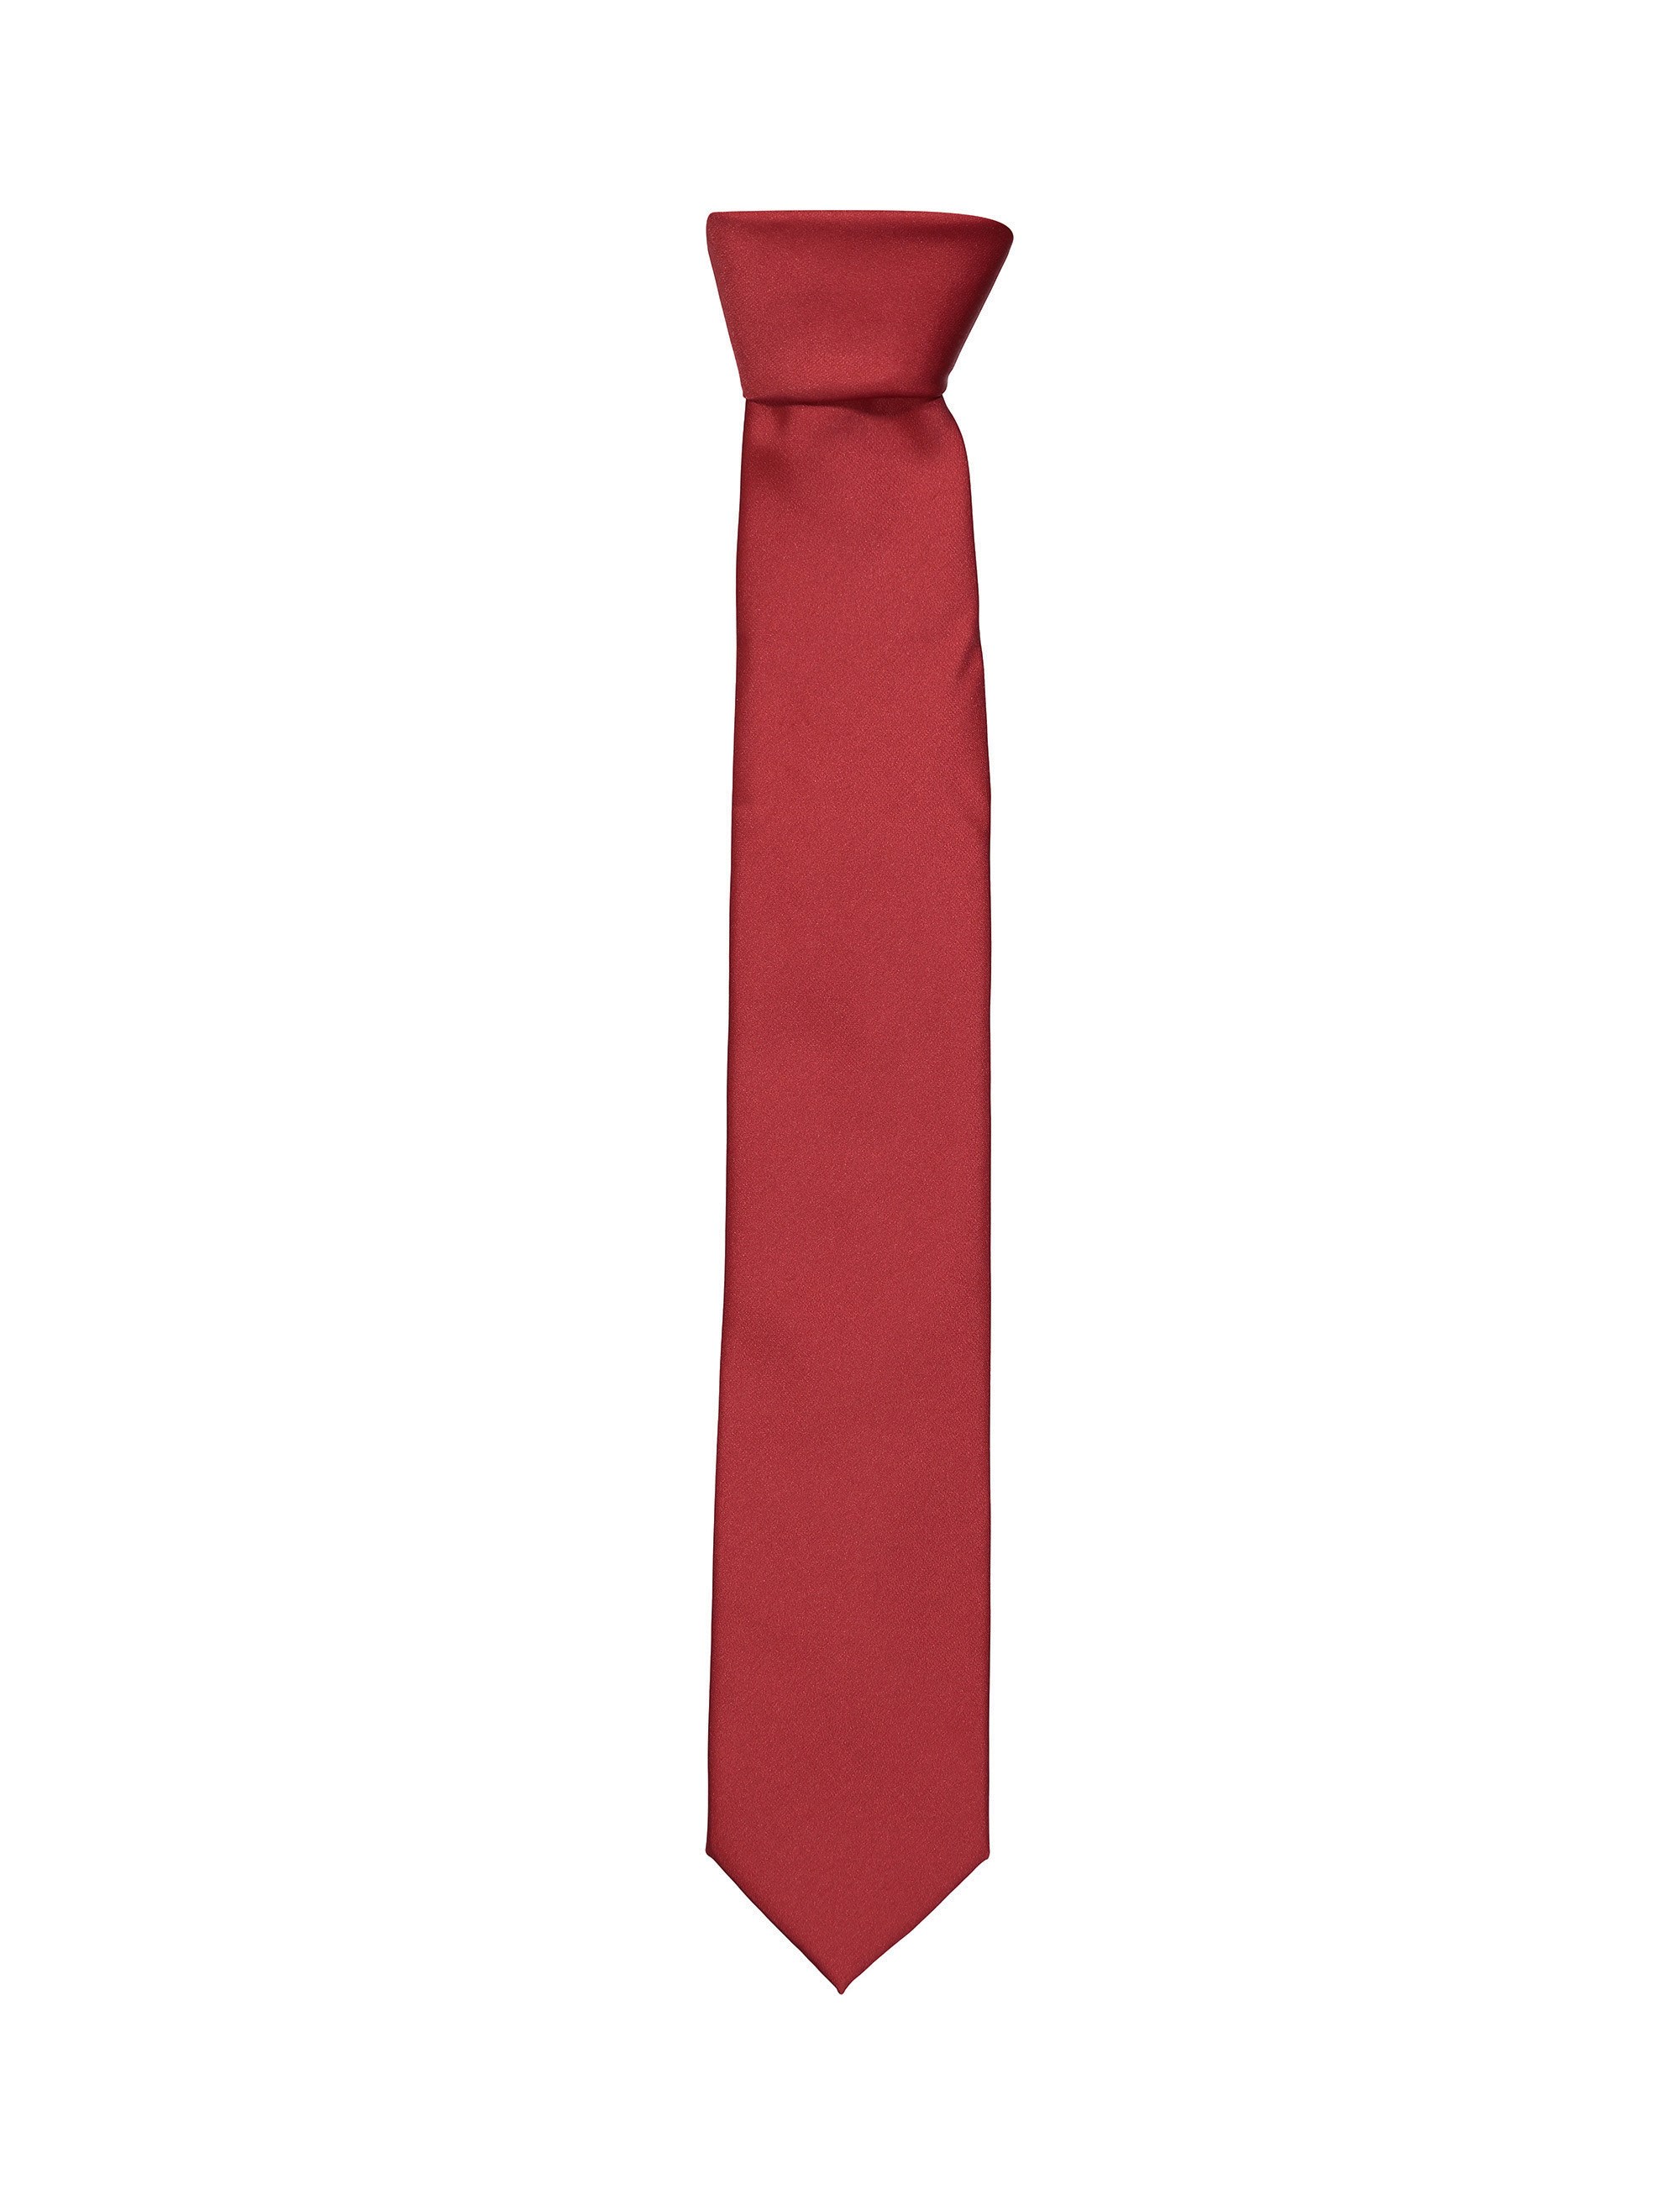 کراوات ساده مردانه - کالکشن تک سایز - قرمز - 1